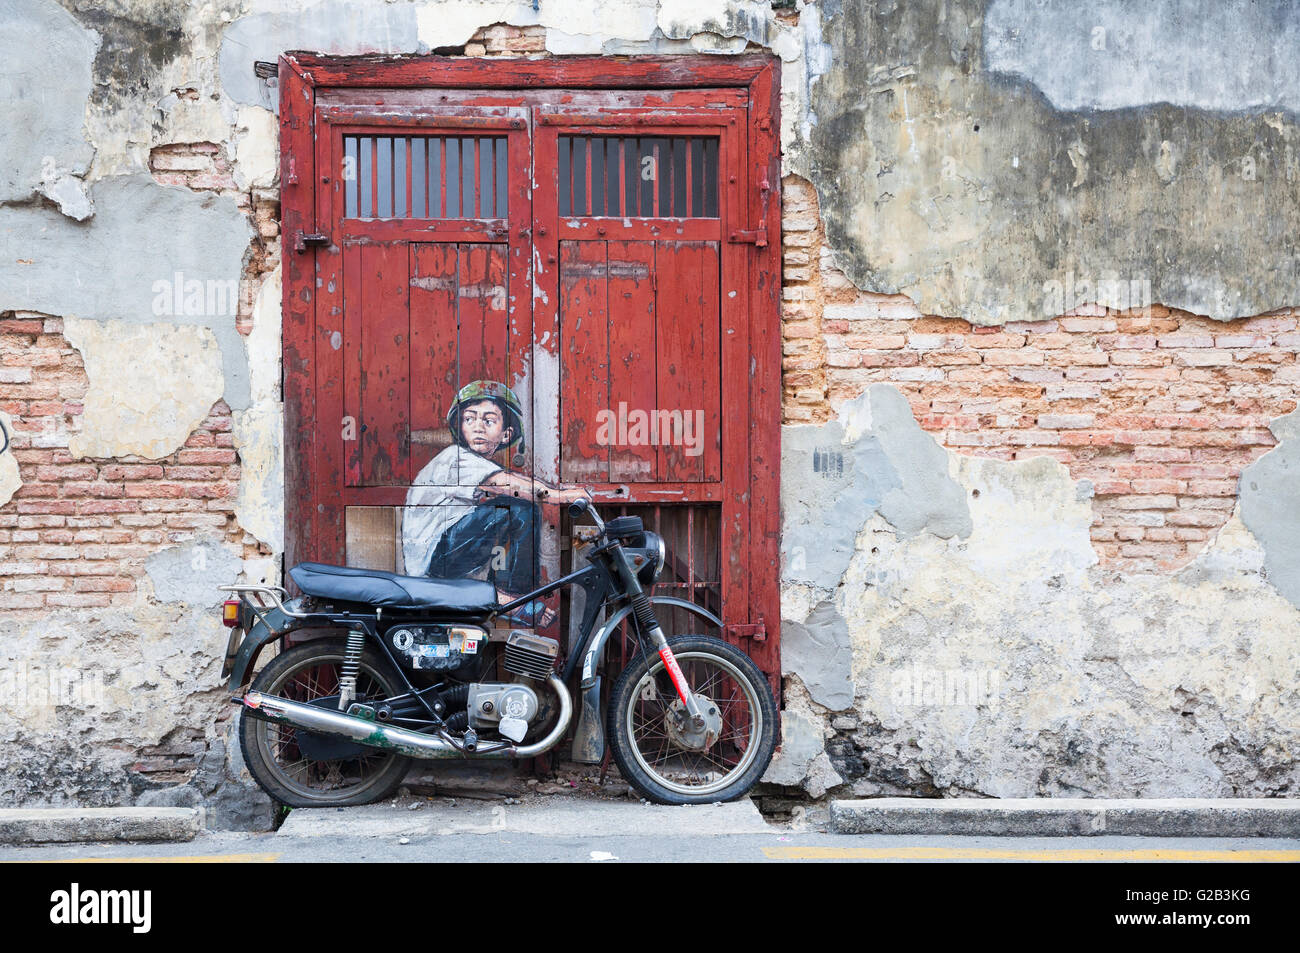 GEORGE TOWN, MALAYSIA - März 22: "Junge auf dem Motorrad" Straße Installation von Ernest Zacharevic auf 22. März 2016 in George Tow Stockfoto